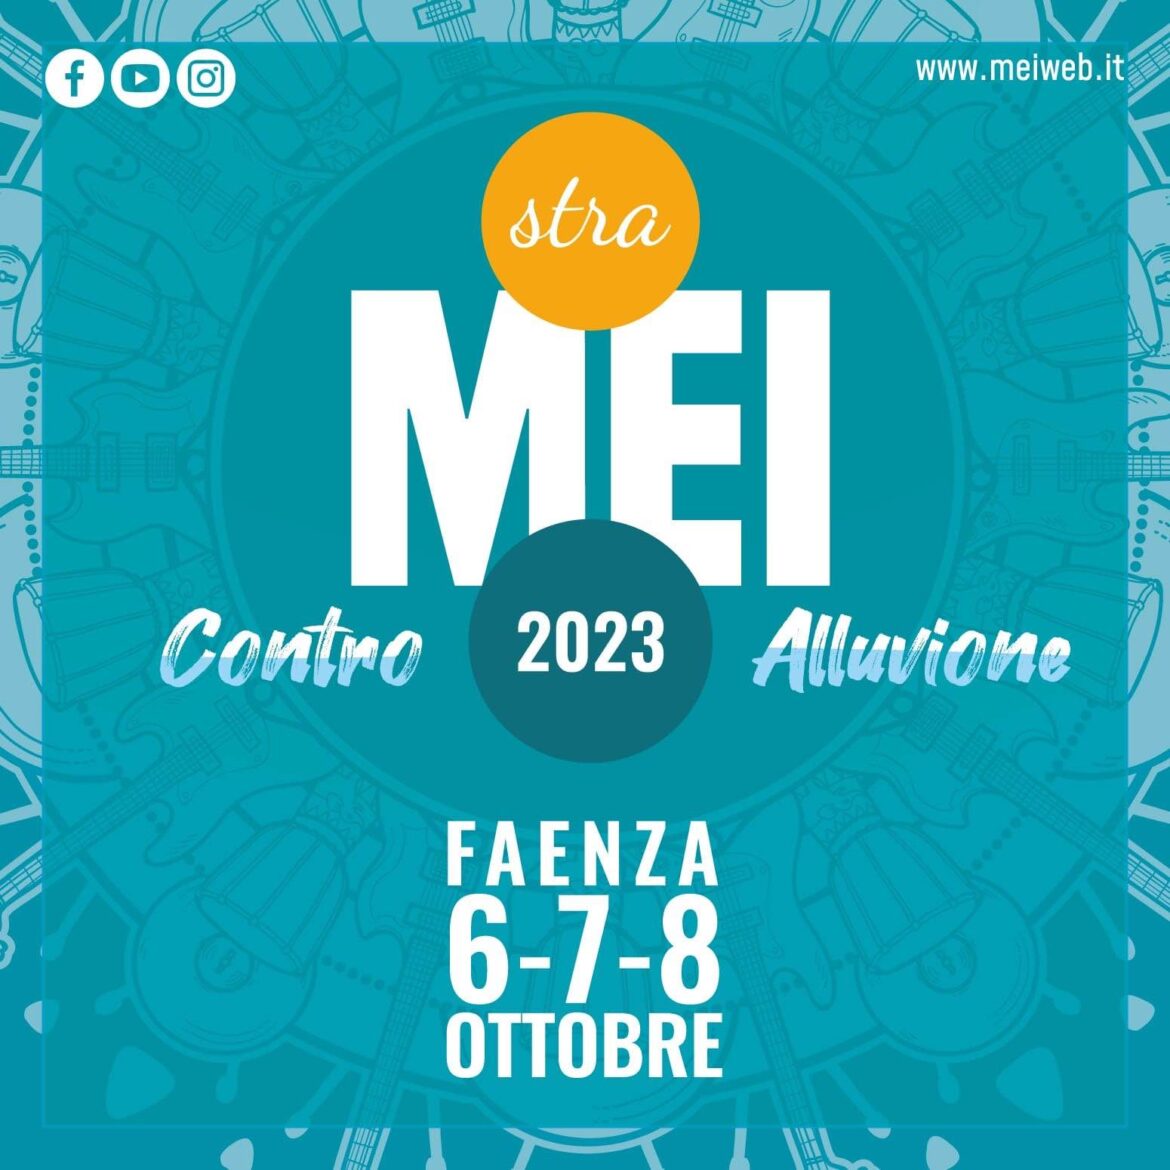 Il 6,7 e 8 ottobre a Faenza la nuova edizione del MEI 2023, i primi ospiti Statuto e i Gang, Nobraino e Savana Funk.